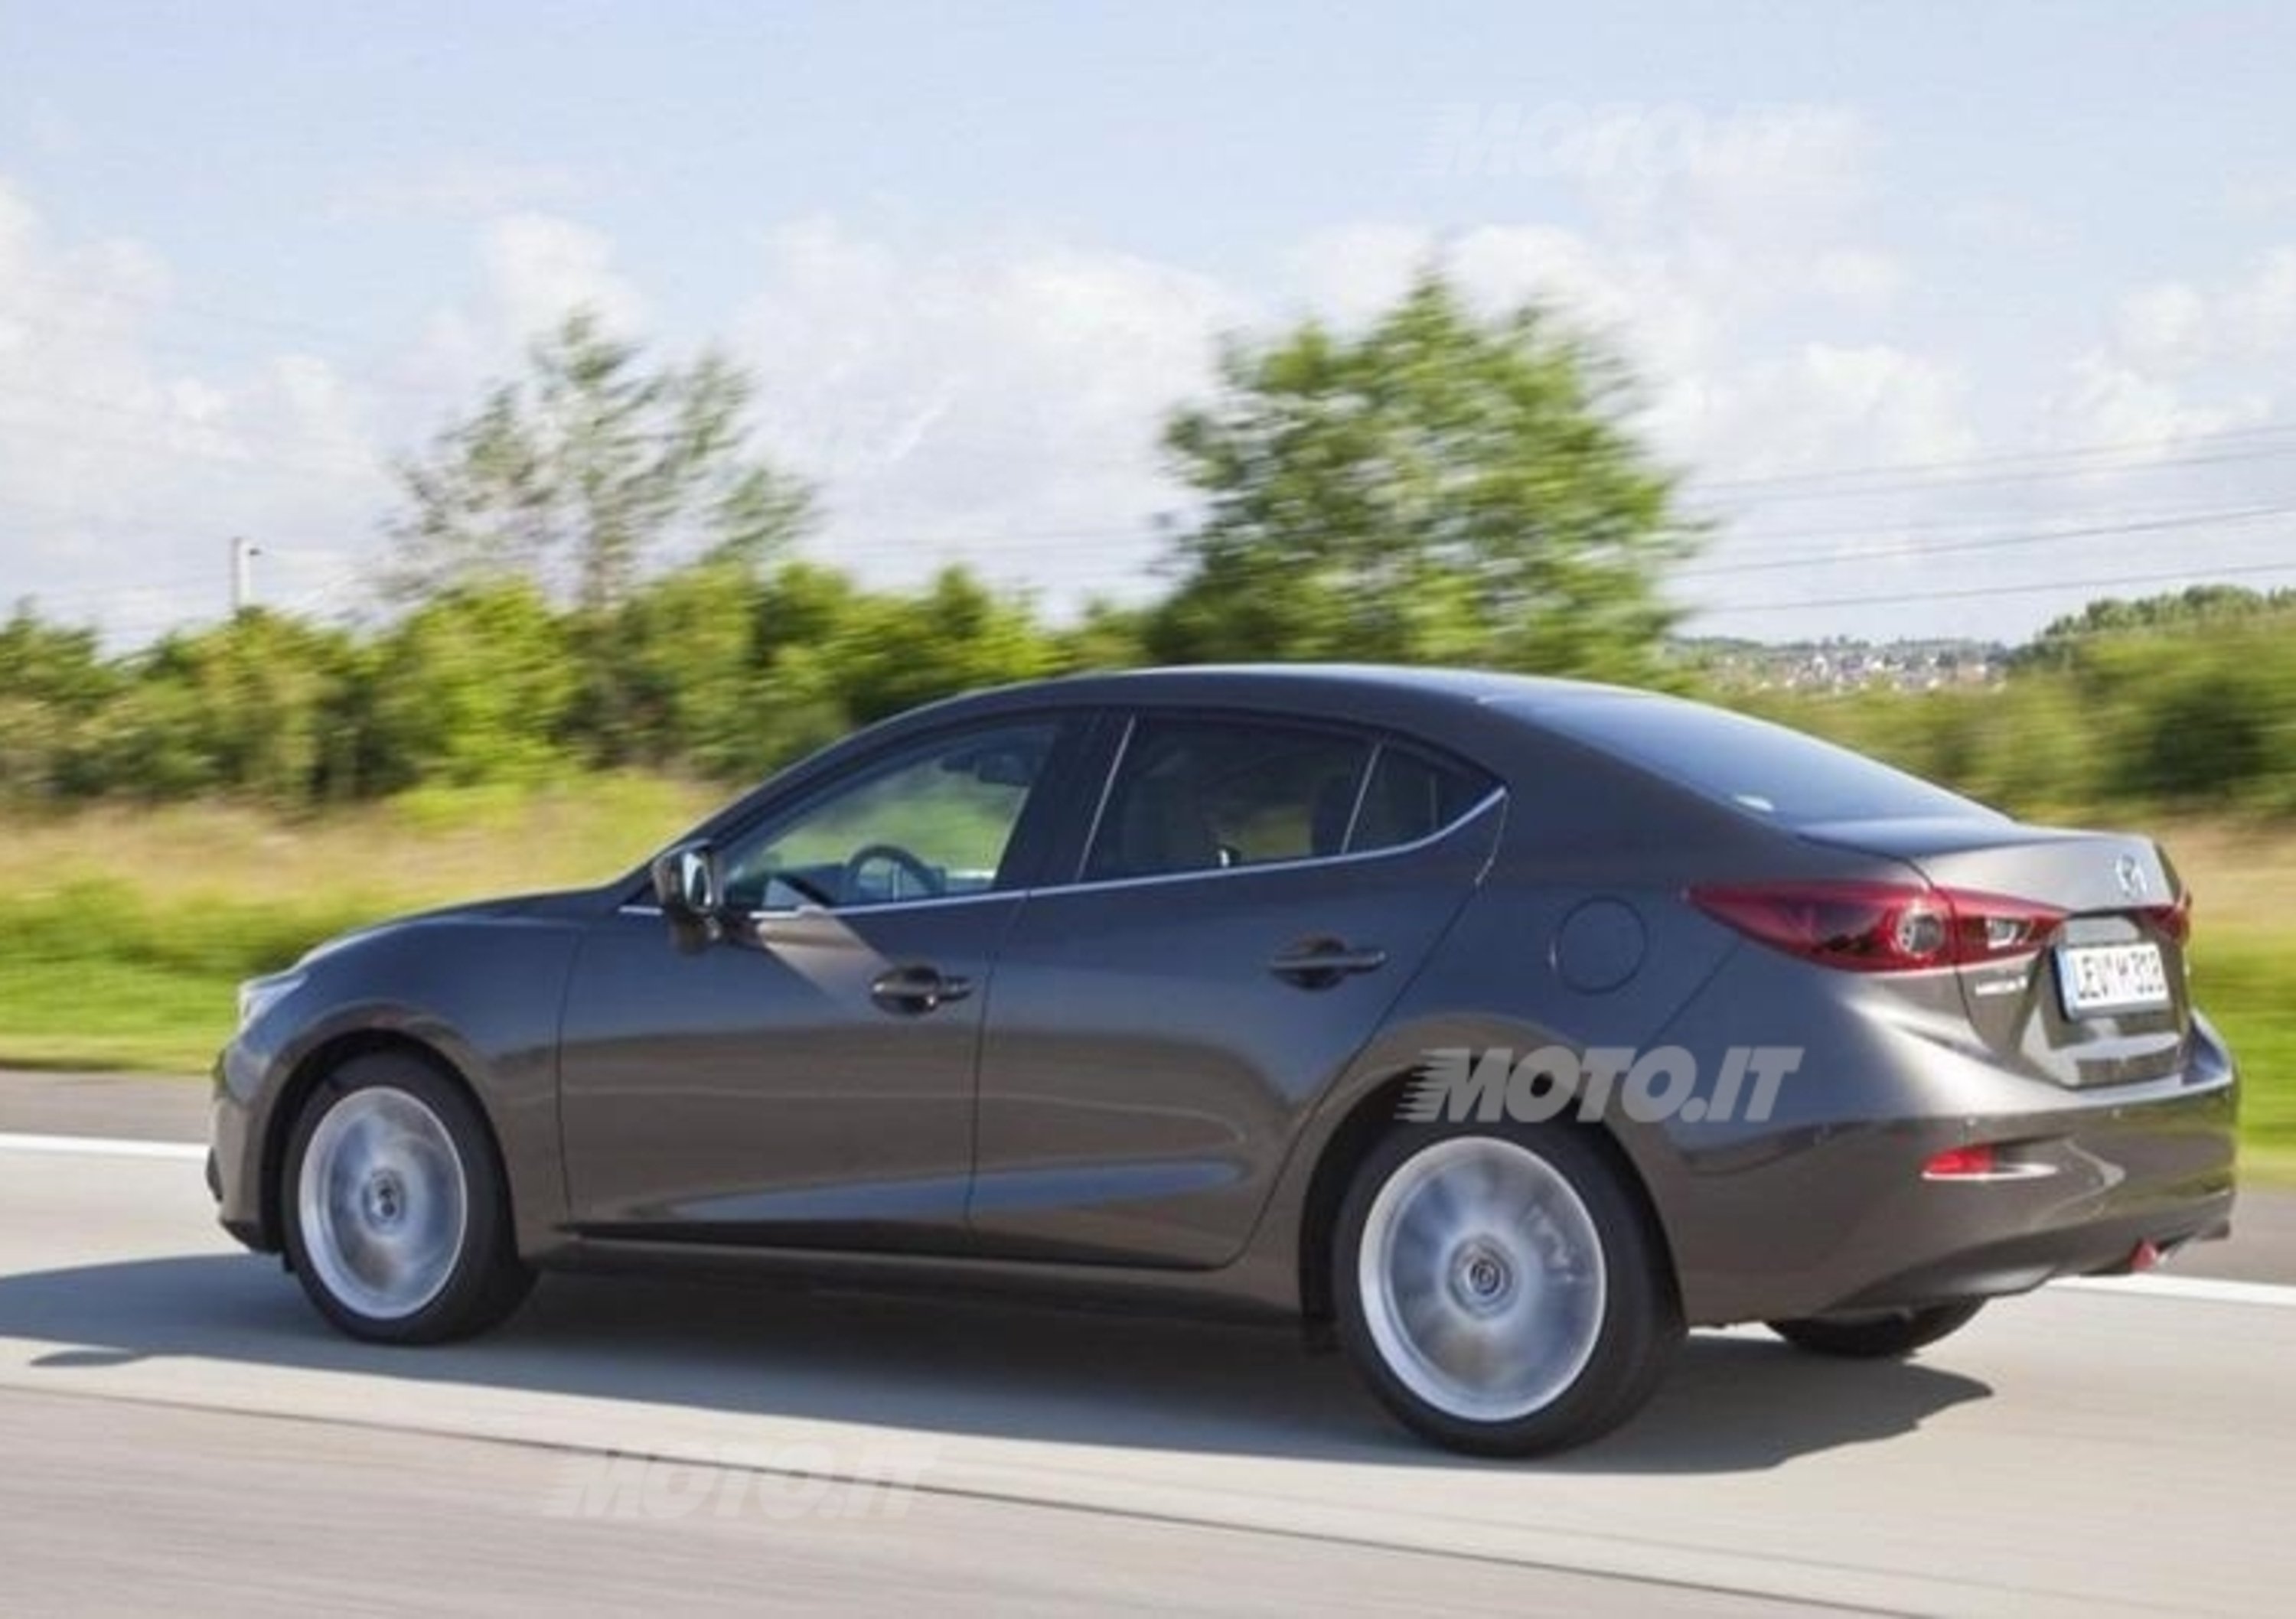 Nuova Mazda3 Sedan: prime immagini ufficiali